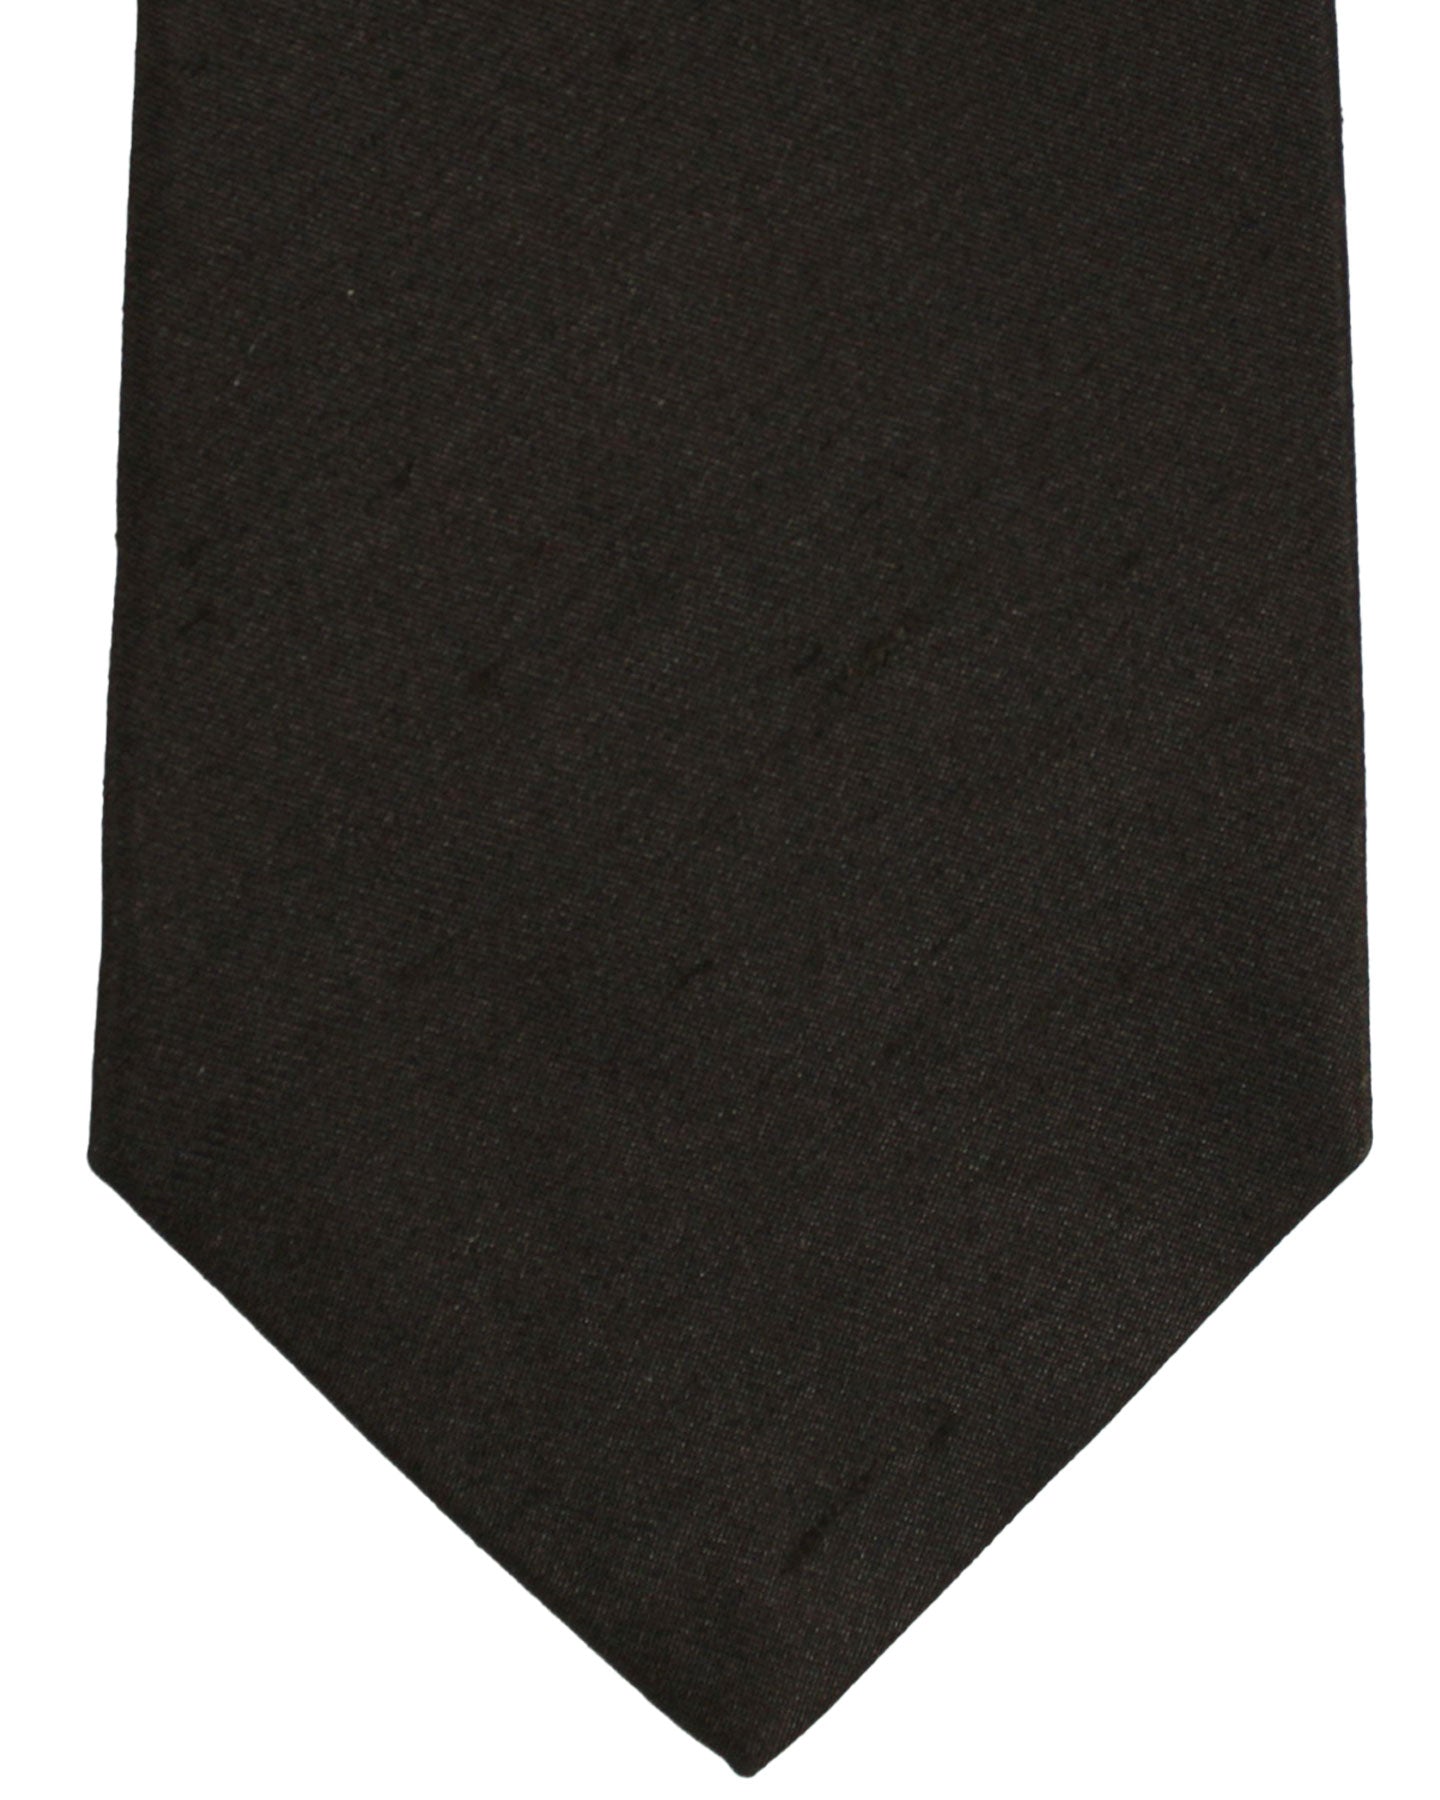 Kiton Silk Tie Brown Grosgrain Design - Sevenfold Necktie